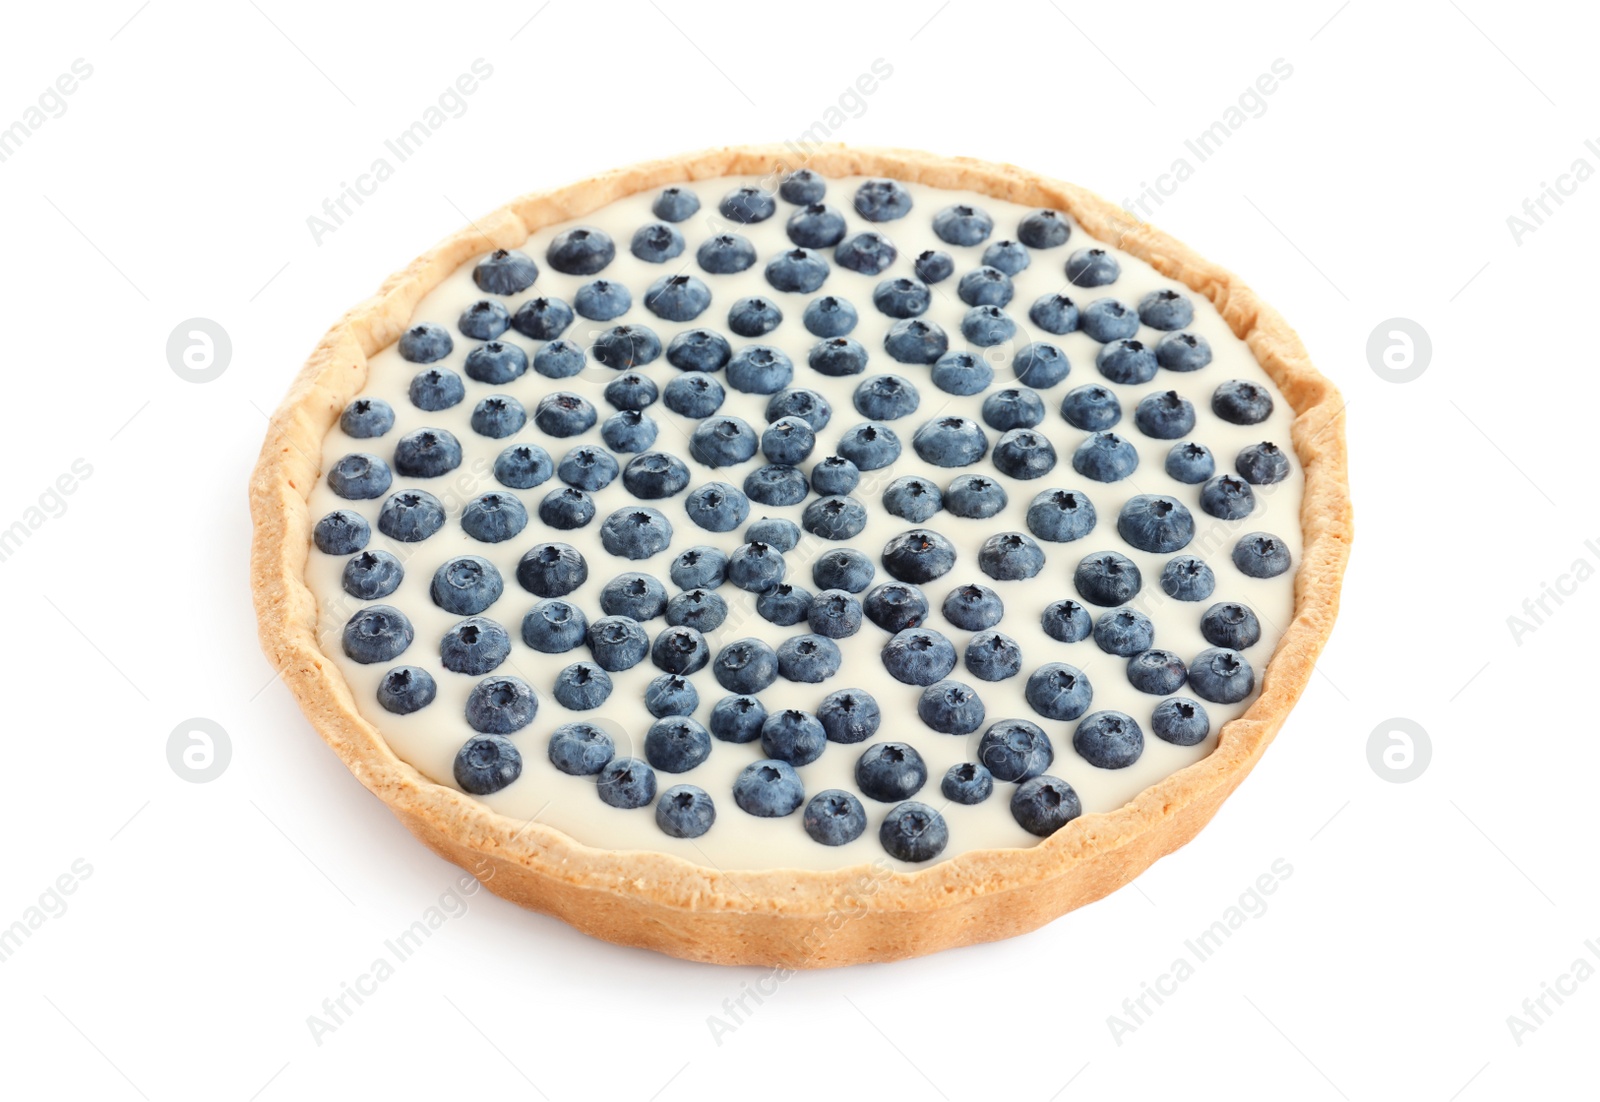 Photo of Tasty blueberry cake on white background